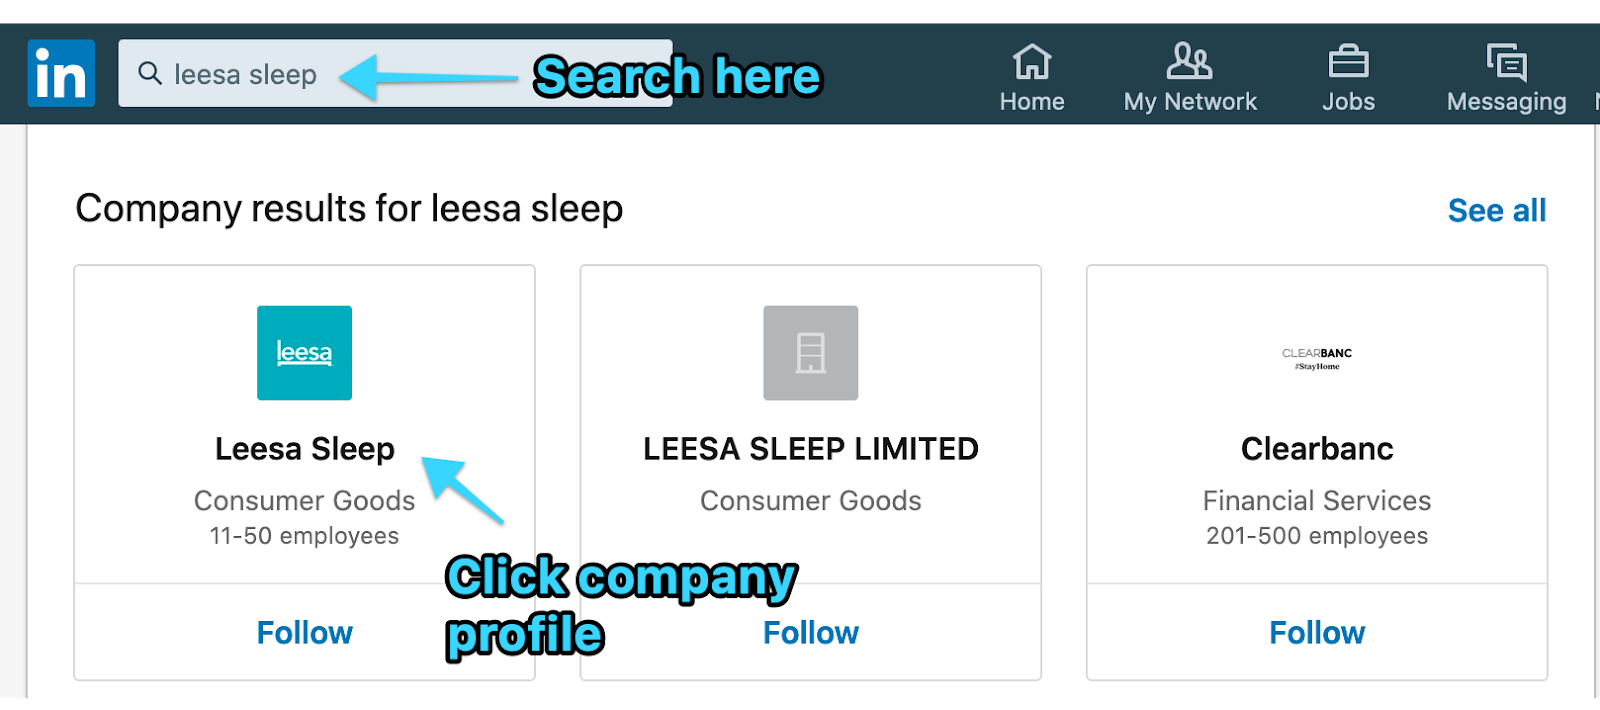 Leesa Sleep's LinkedIn profile